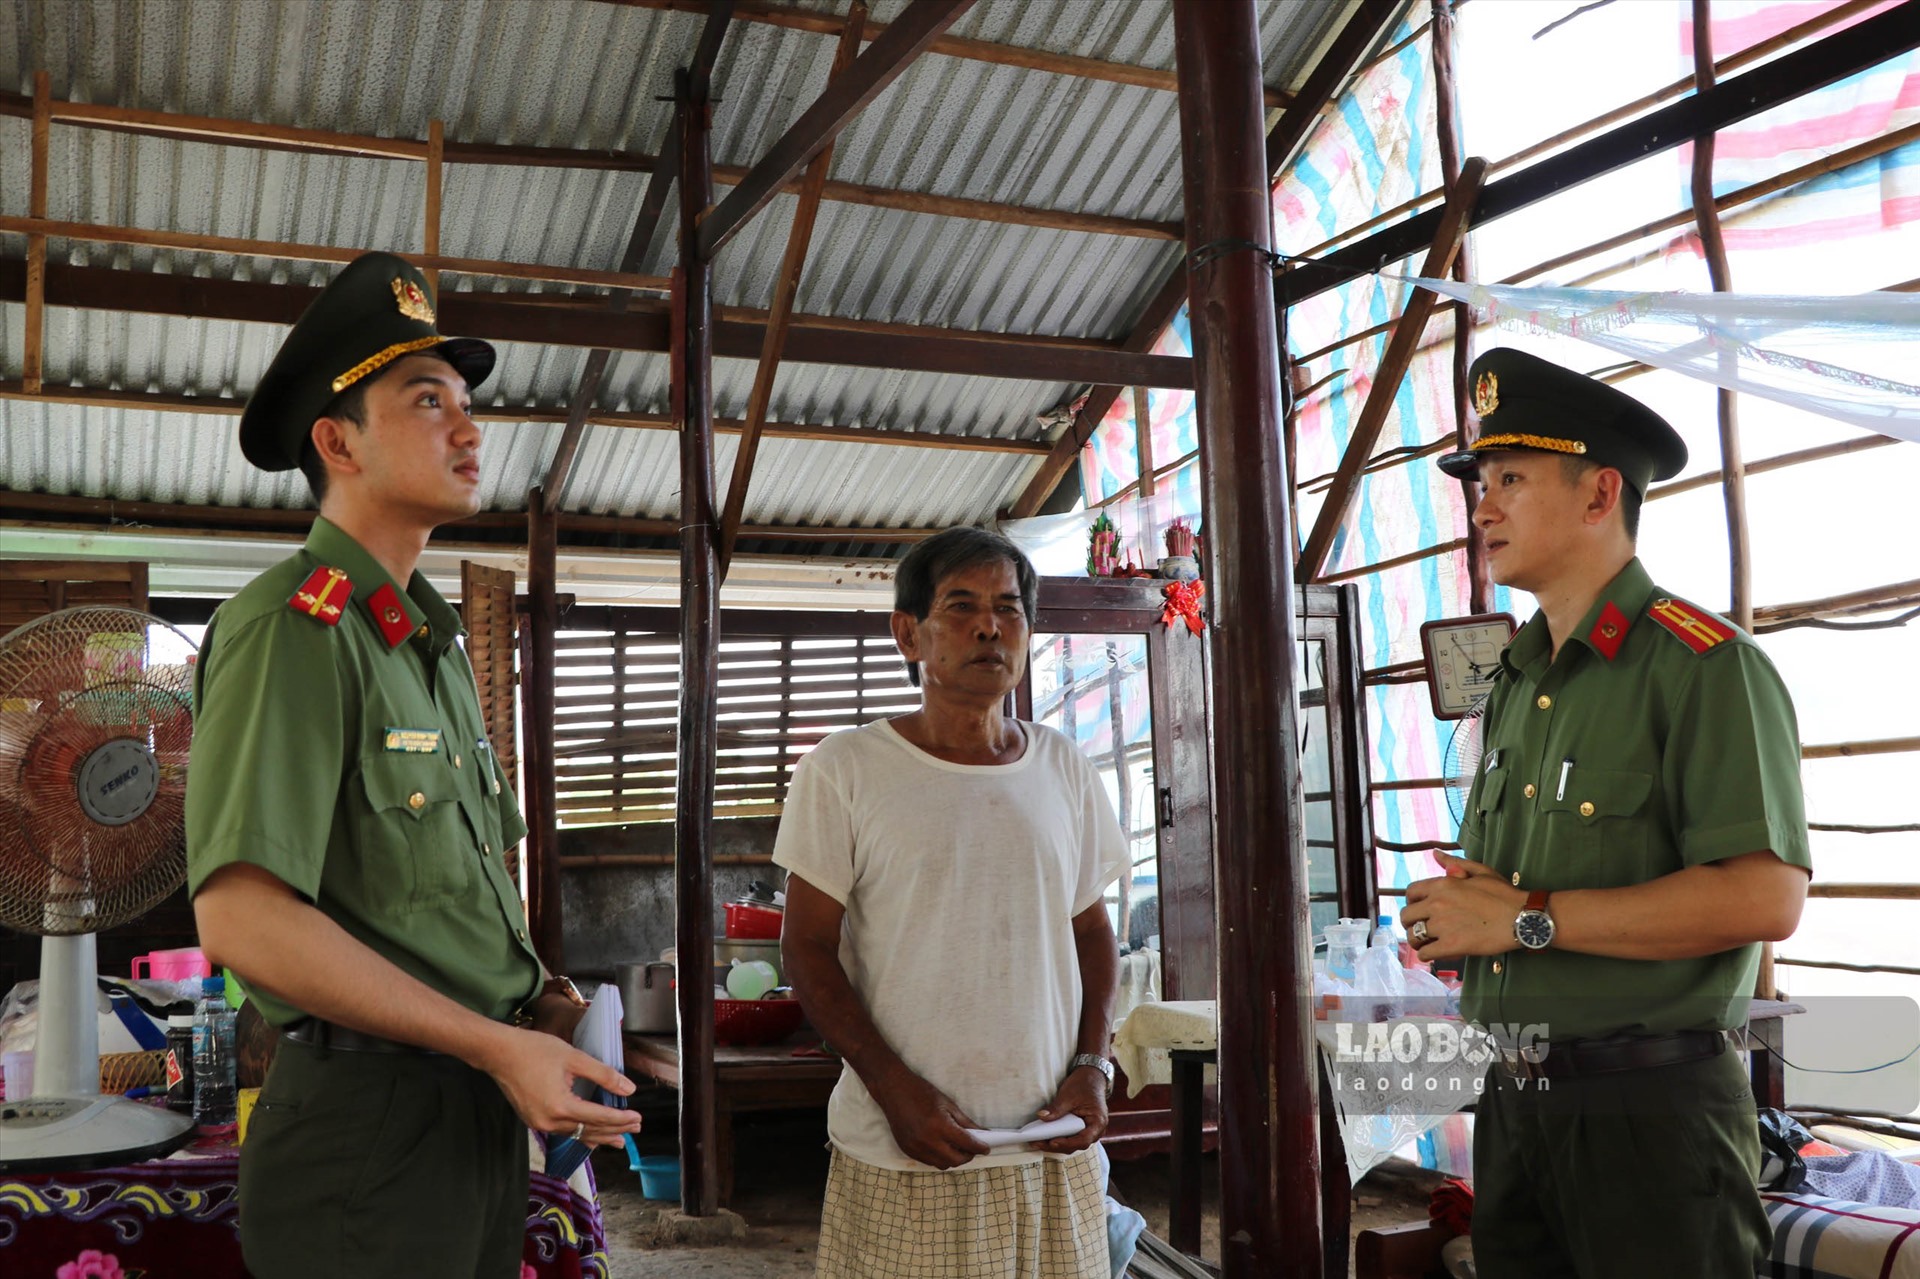 Thiếu tá Trương Văn Quốc - Bí thư Đoàn thanh niên Công an tỉnh Kiên Giang (bên phải) thăm hỏi hoàn cảnh các hộ dân ở xã Thủy Liễu. Ảnh: Công an Kiên Giang